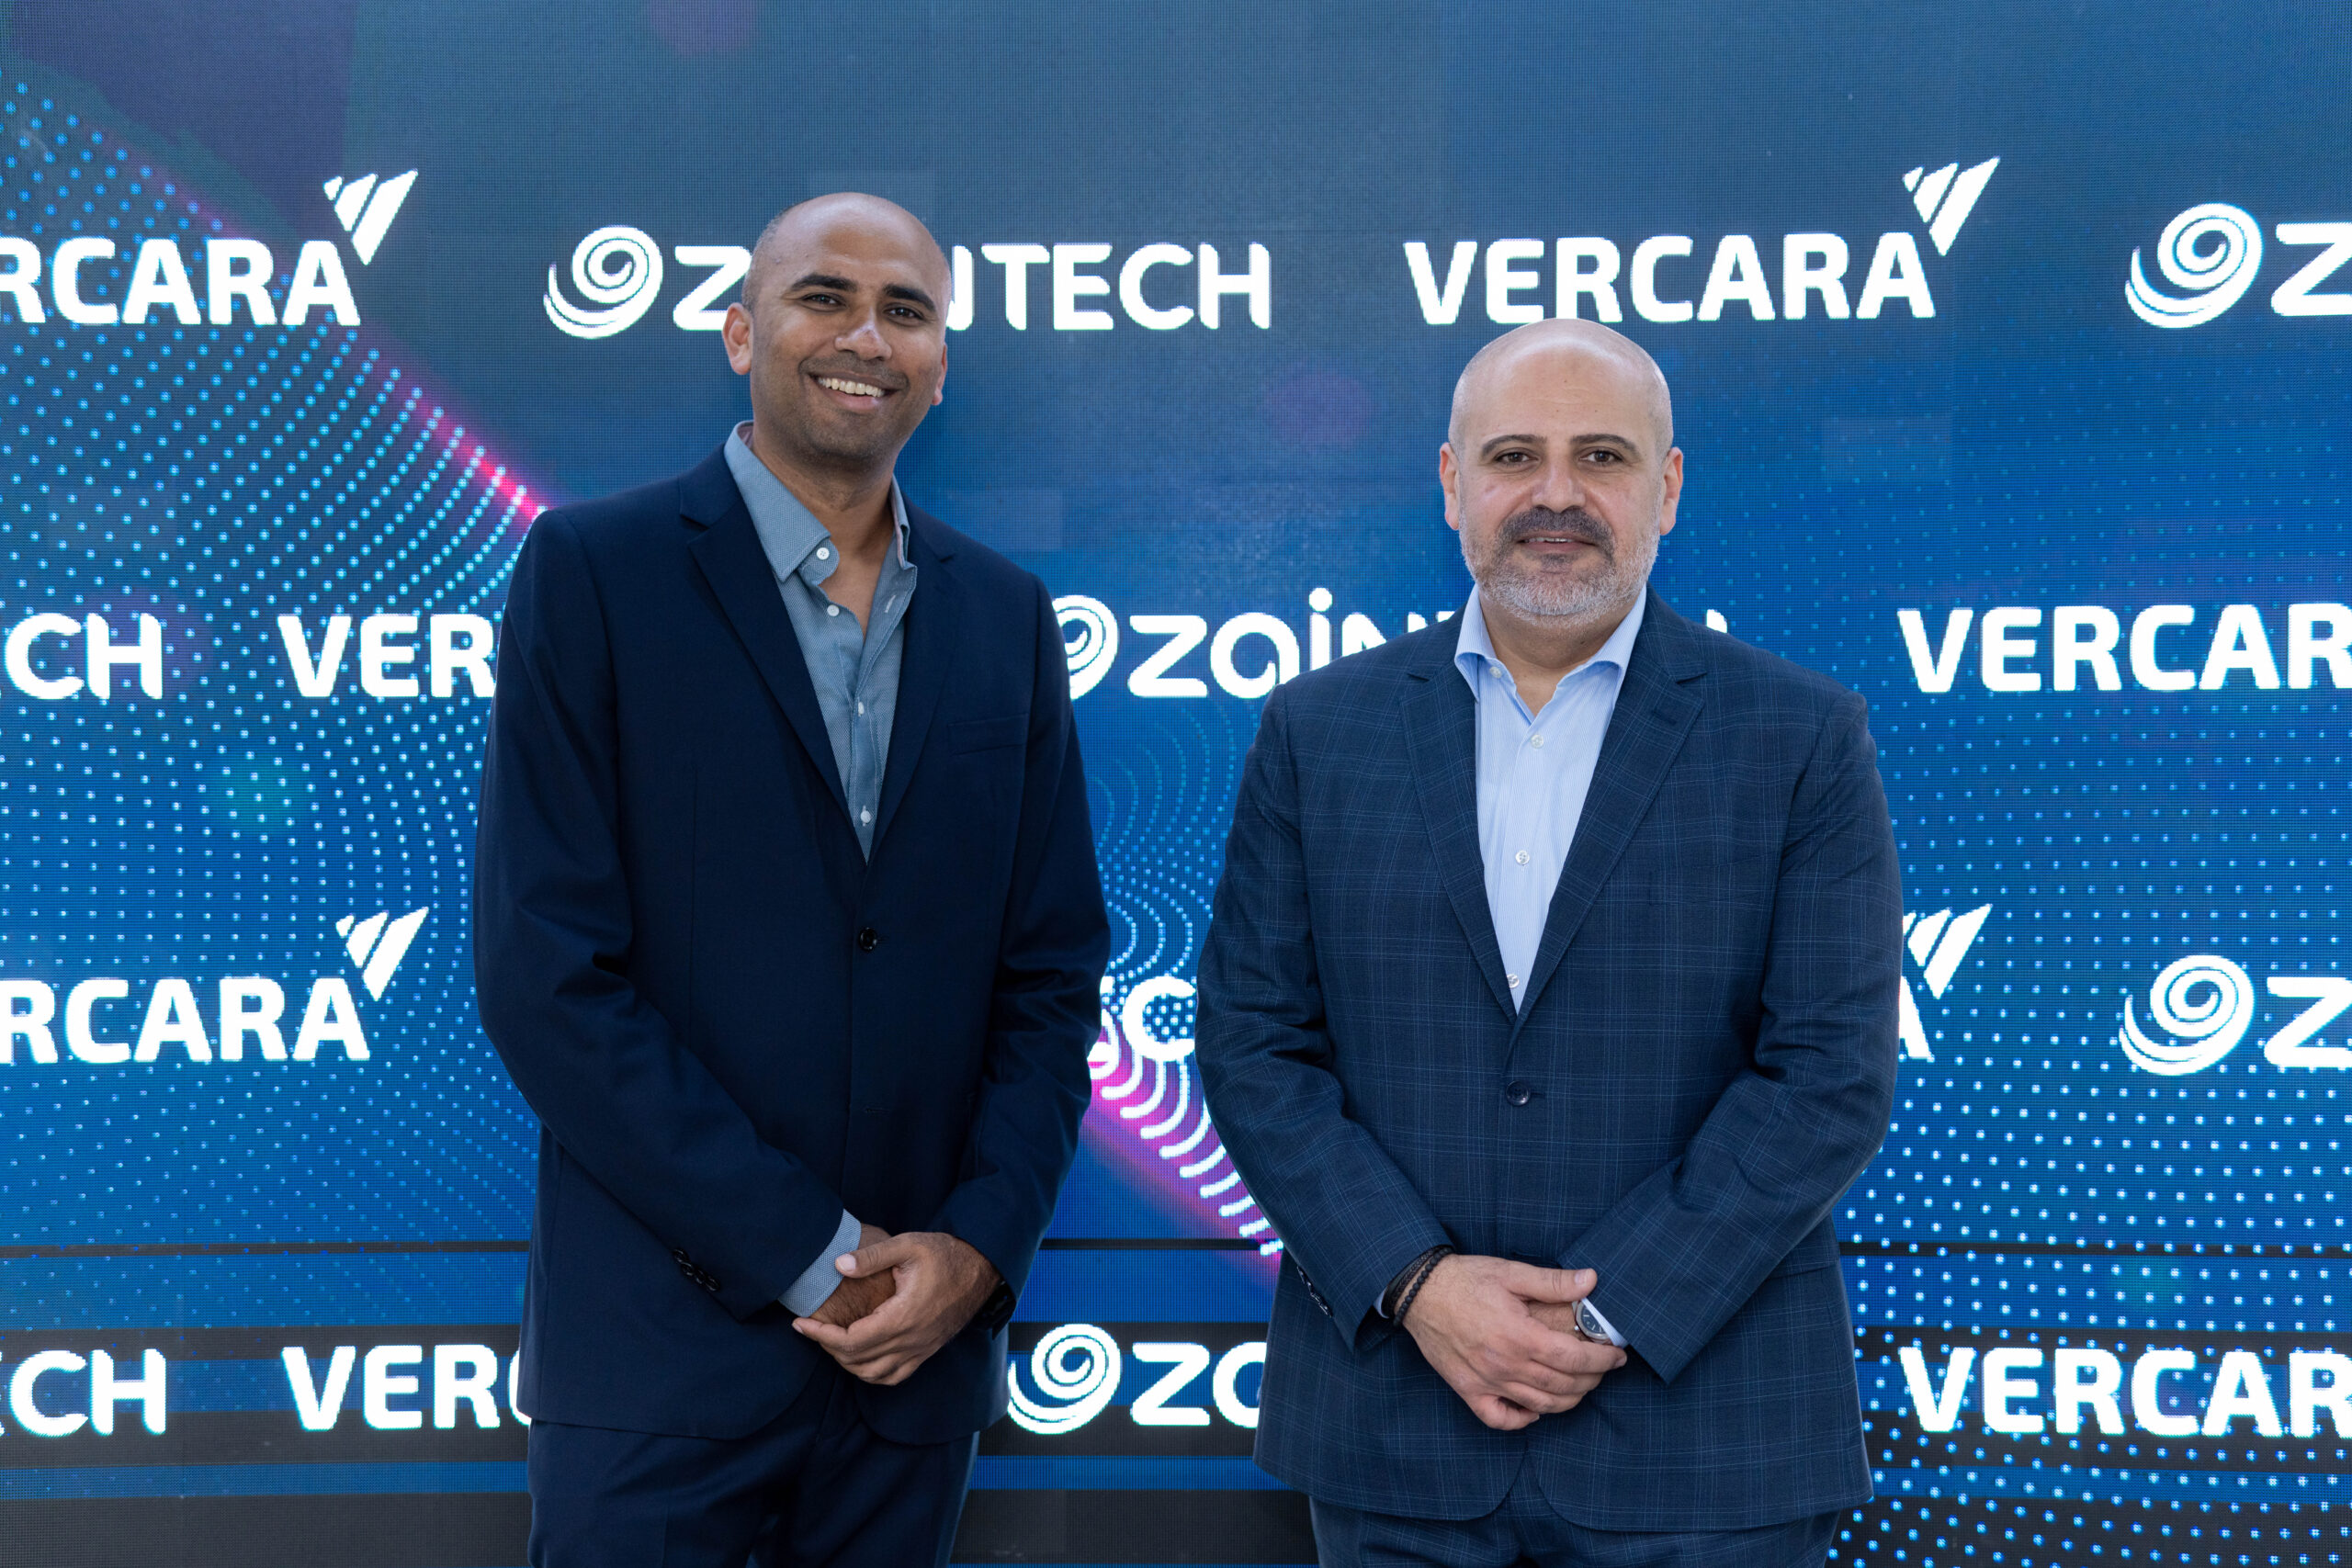 "زين تك" تتعاون مع شركة فيركارا Vercara للارتقاء بمستويات أمن الانترنت في المنطقة